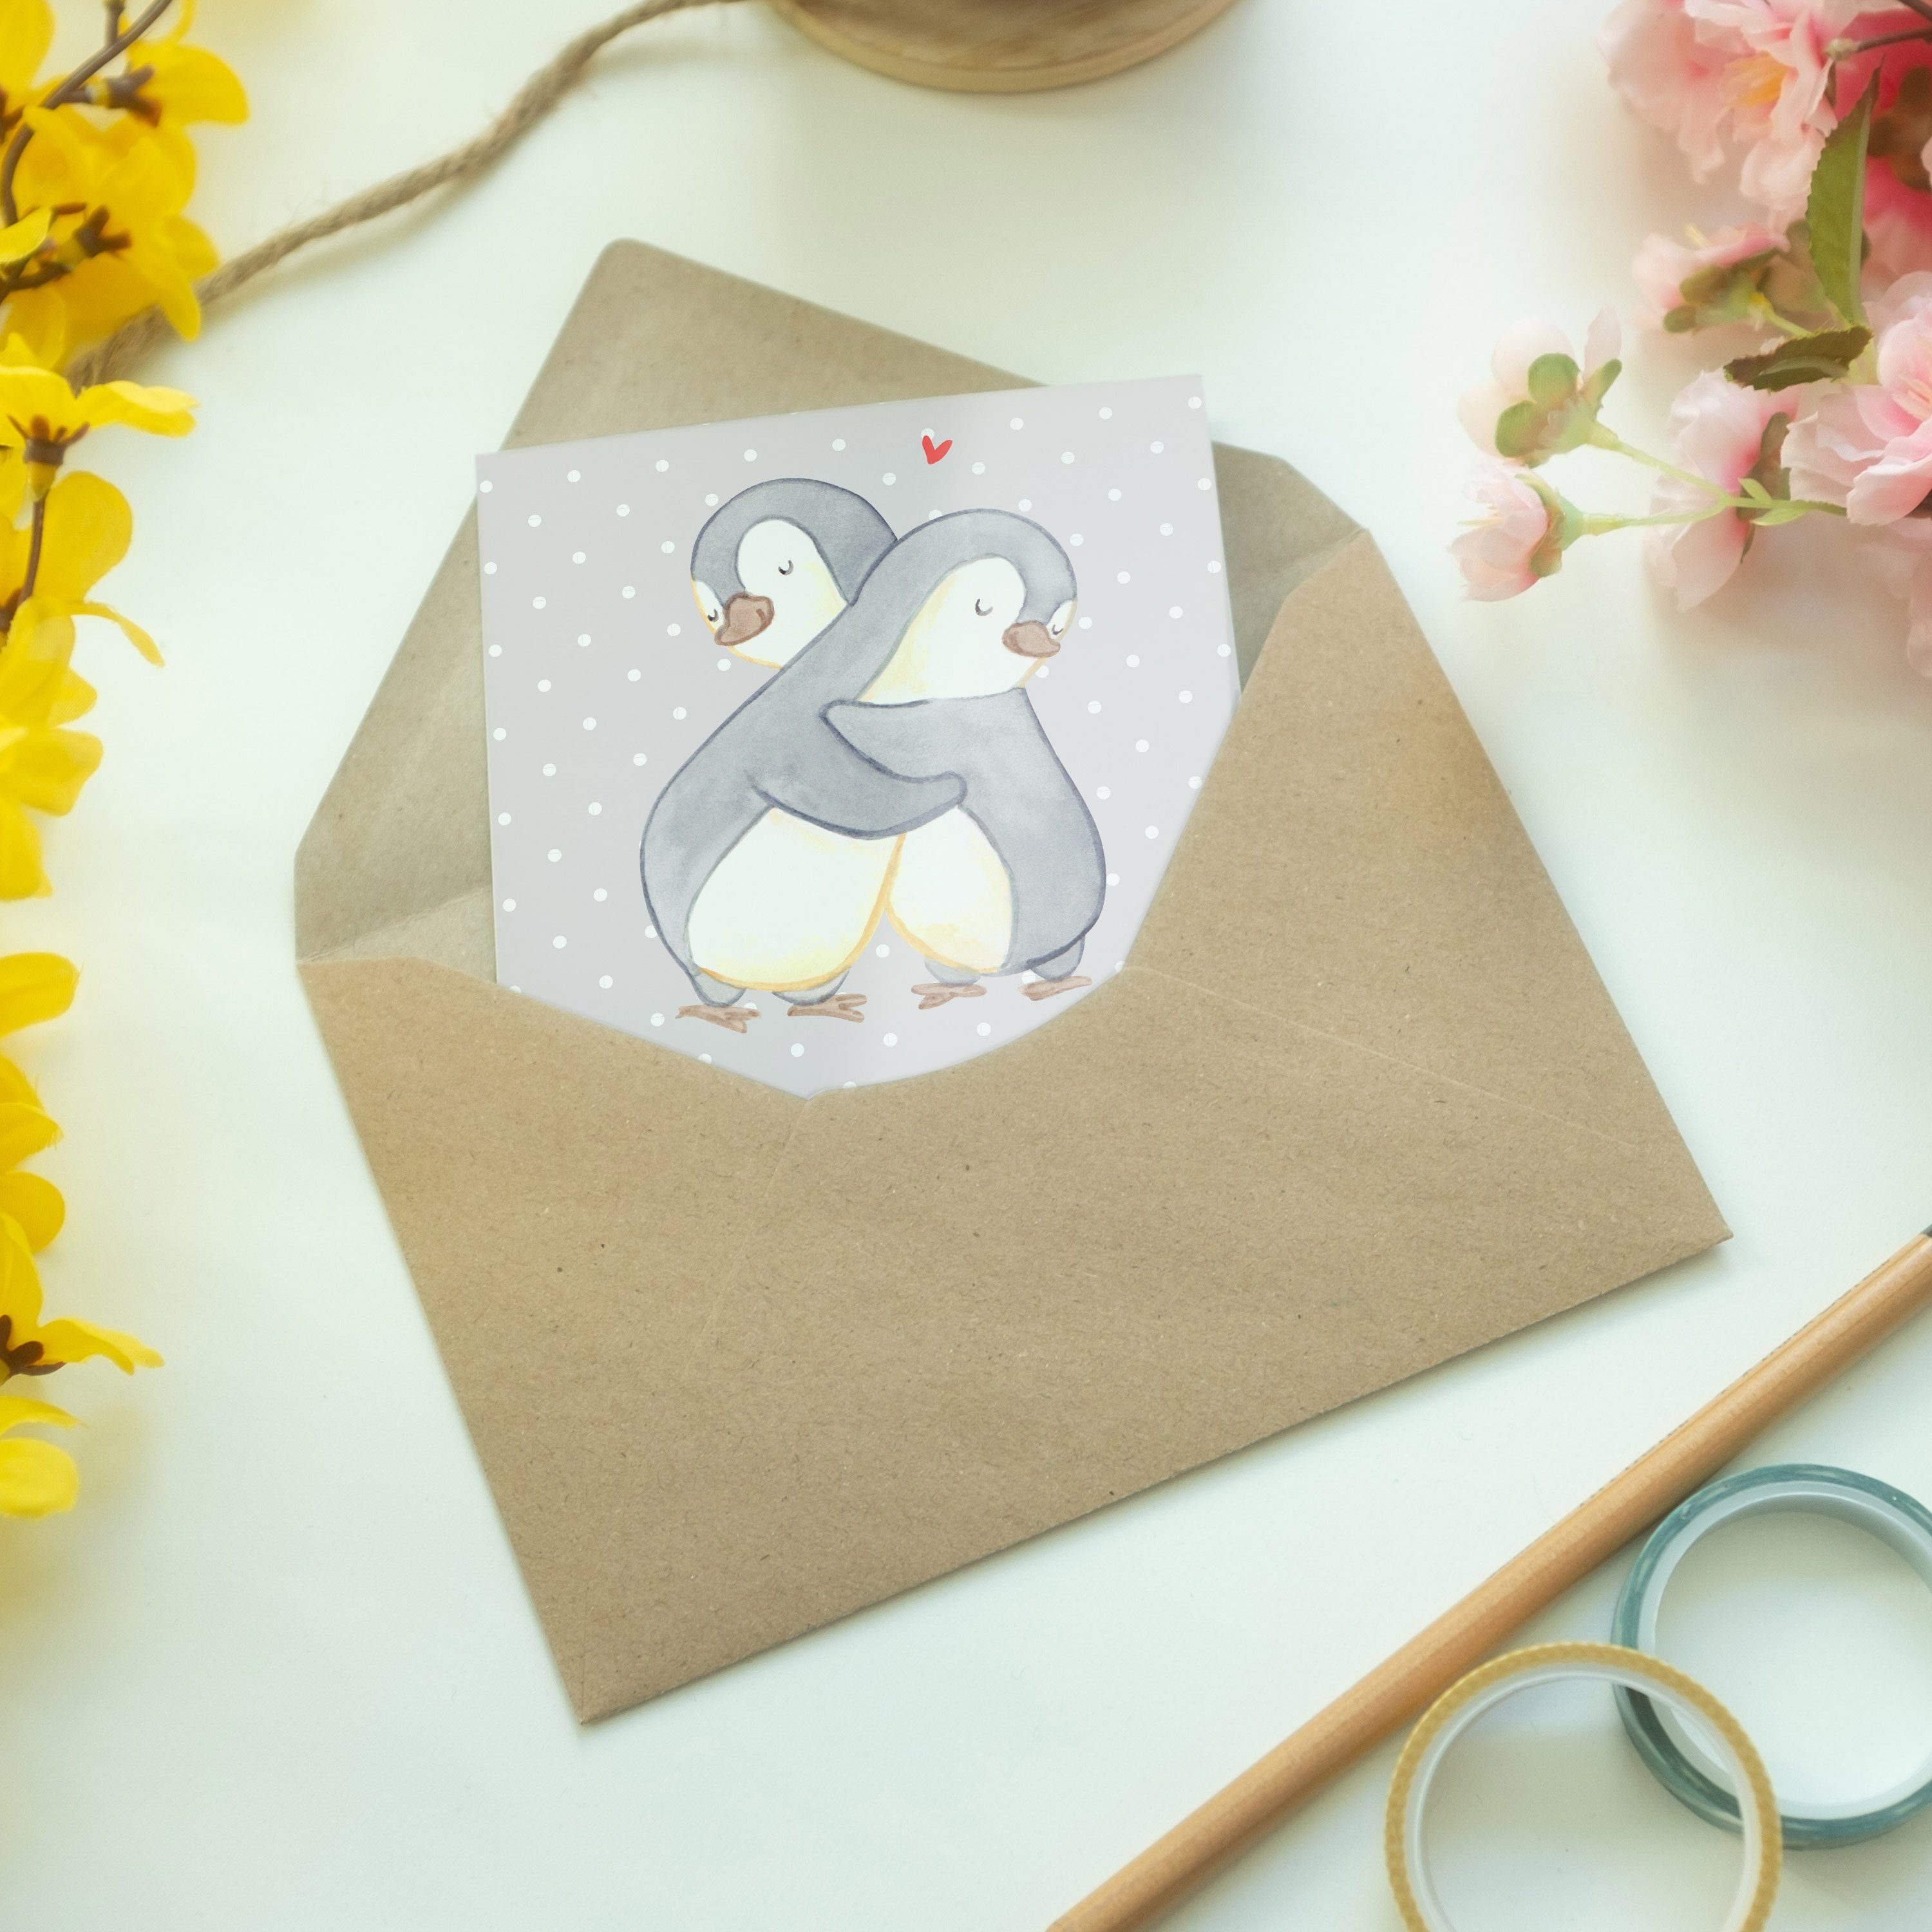 Bester Pinguin - - Welt Grußkarte Pastell Mr. der & Grau Geschenk, Fre Kuschelpartner Panda Mrs.